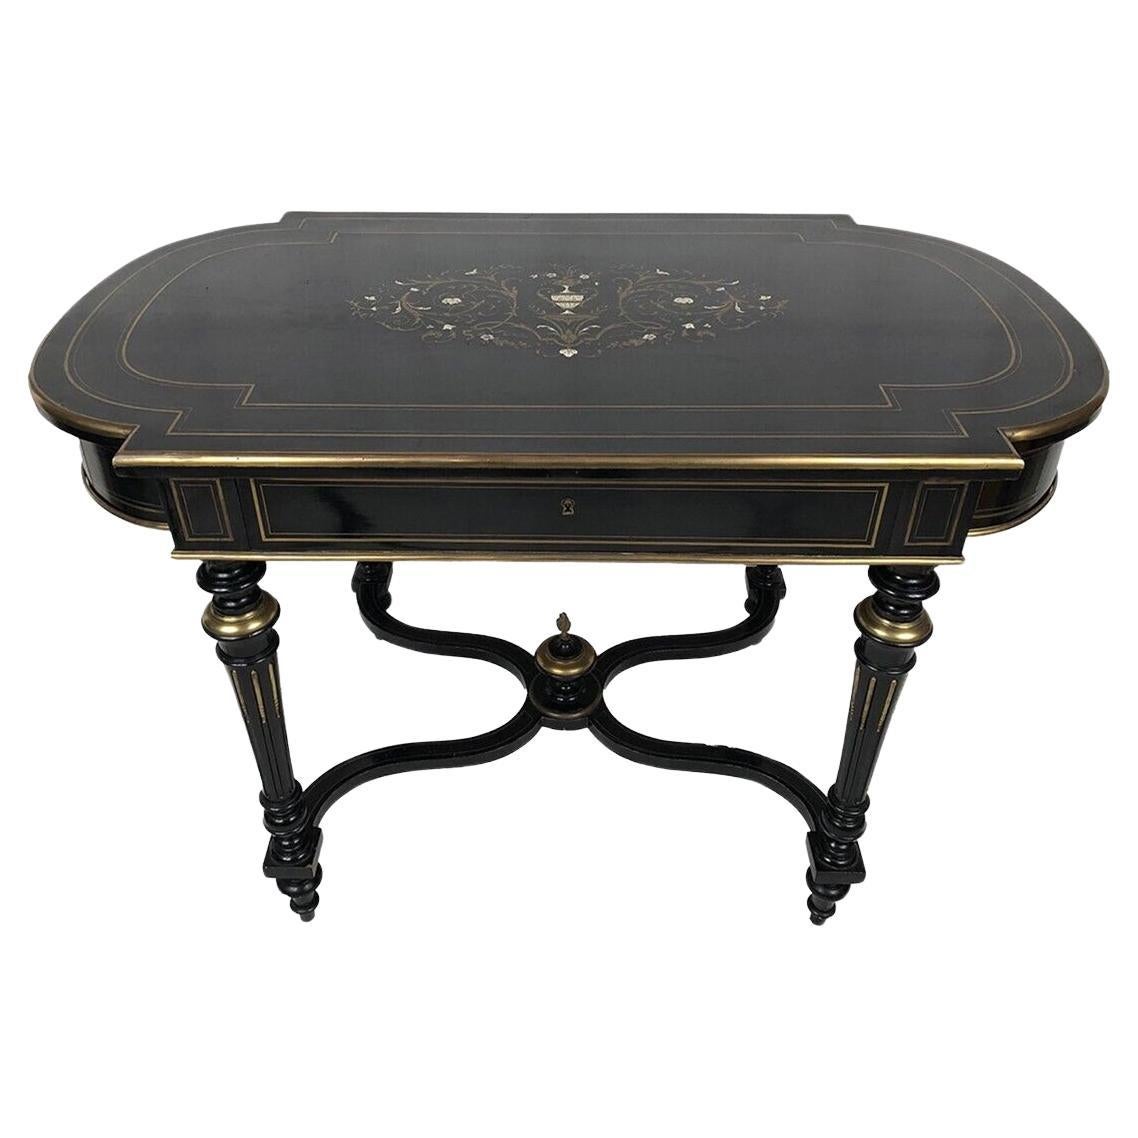 Tisch aus schwarz lackiertem Holz mit zentralem Laiton-Dekor, Napoléon III